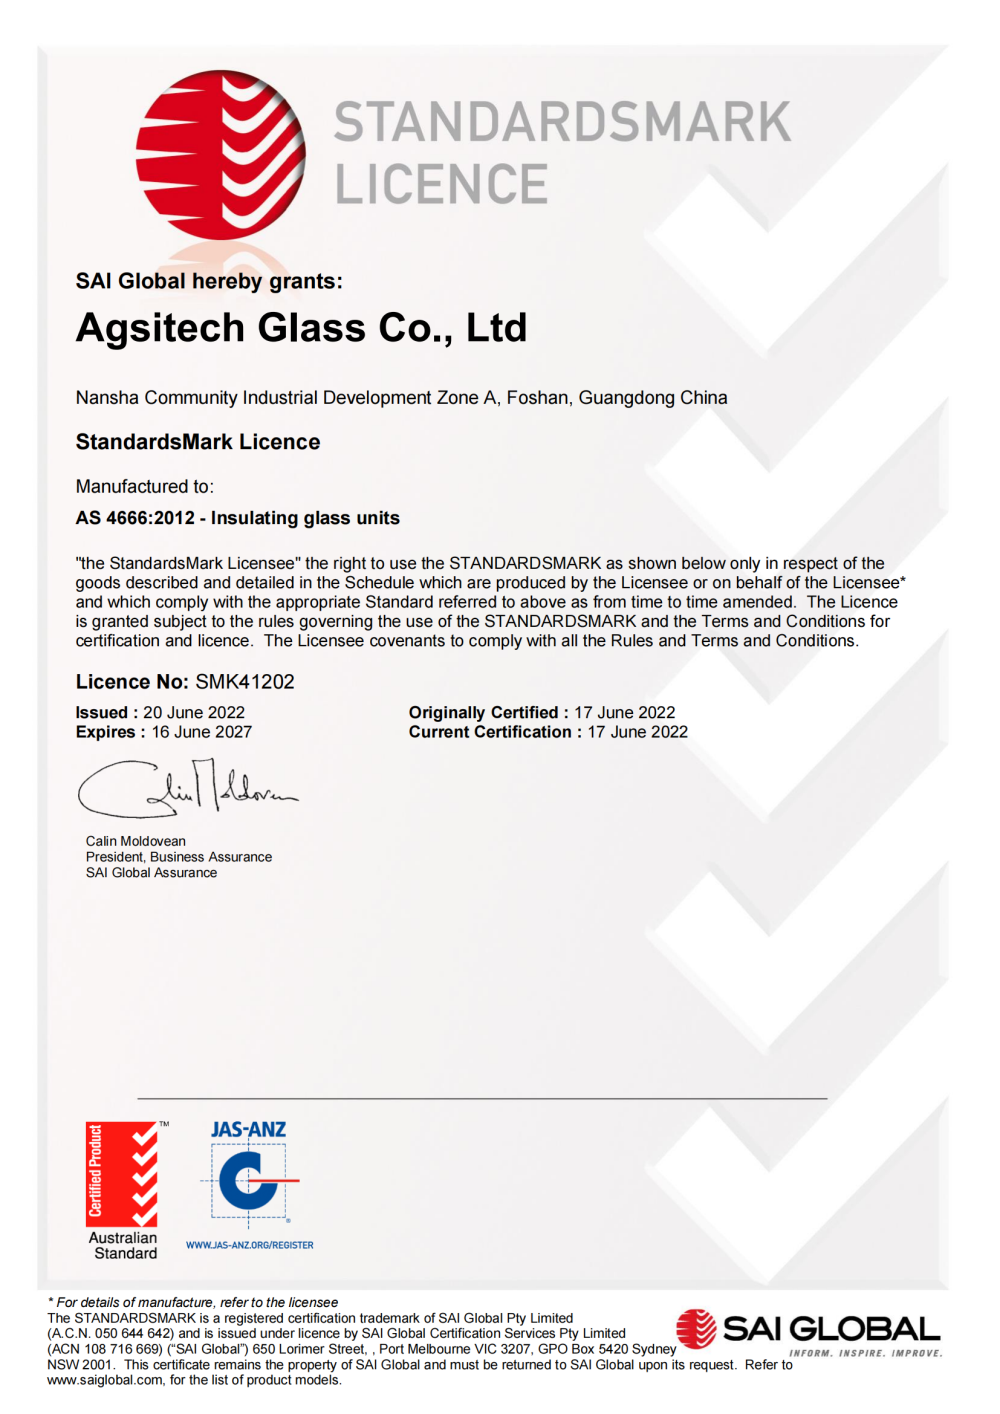 Agsitech 4666 Certificate SMK41202 20220620(1)_00